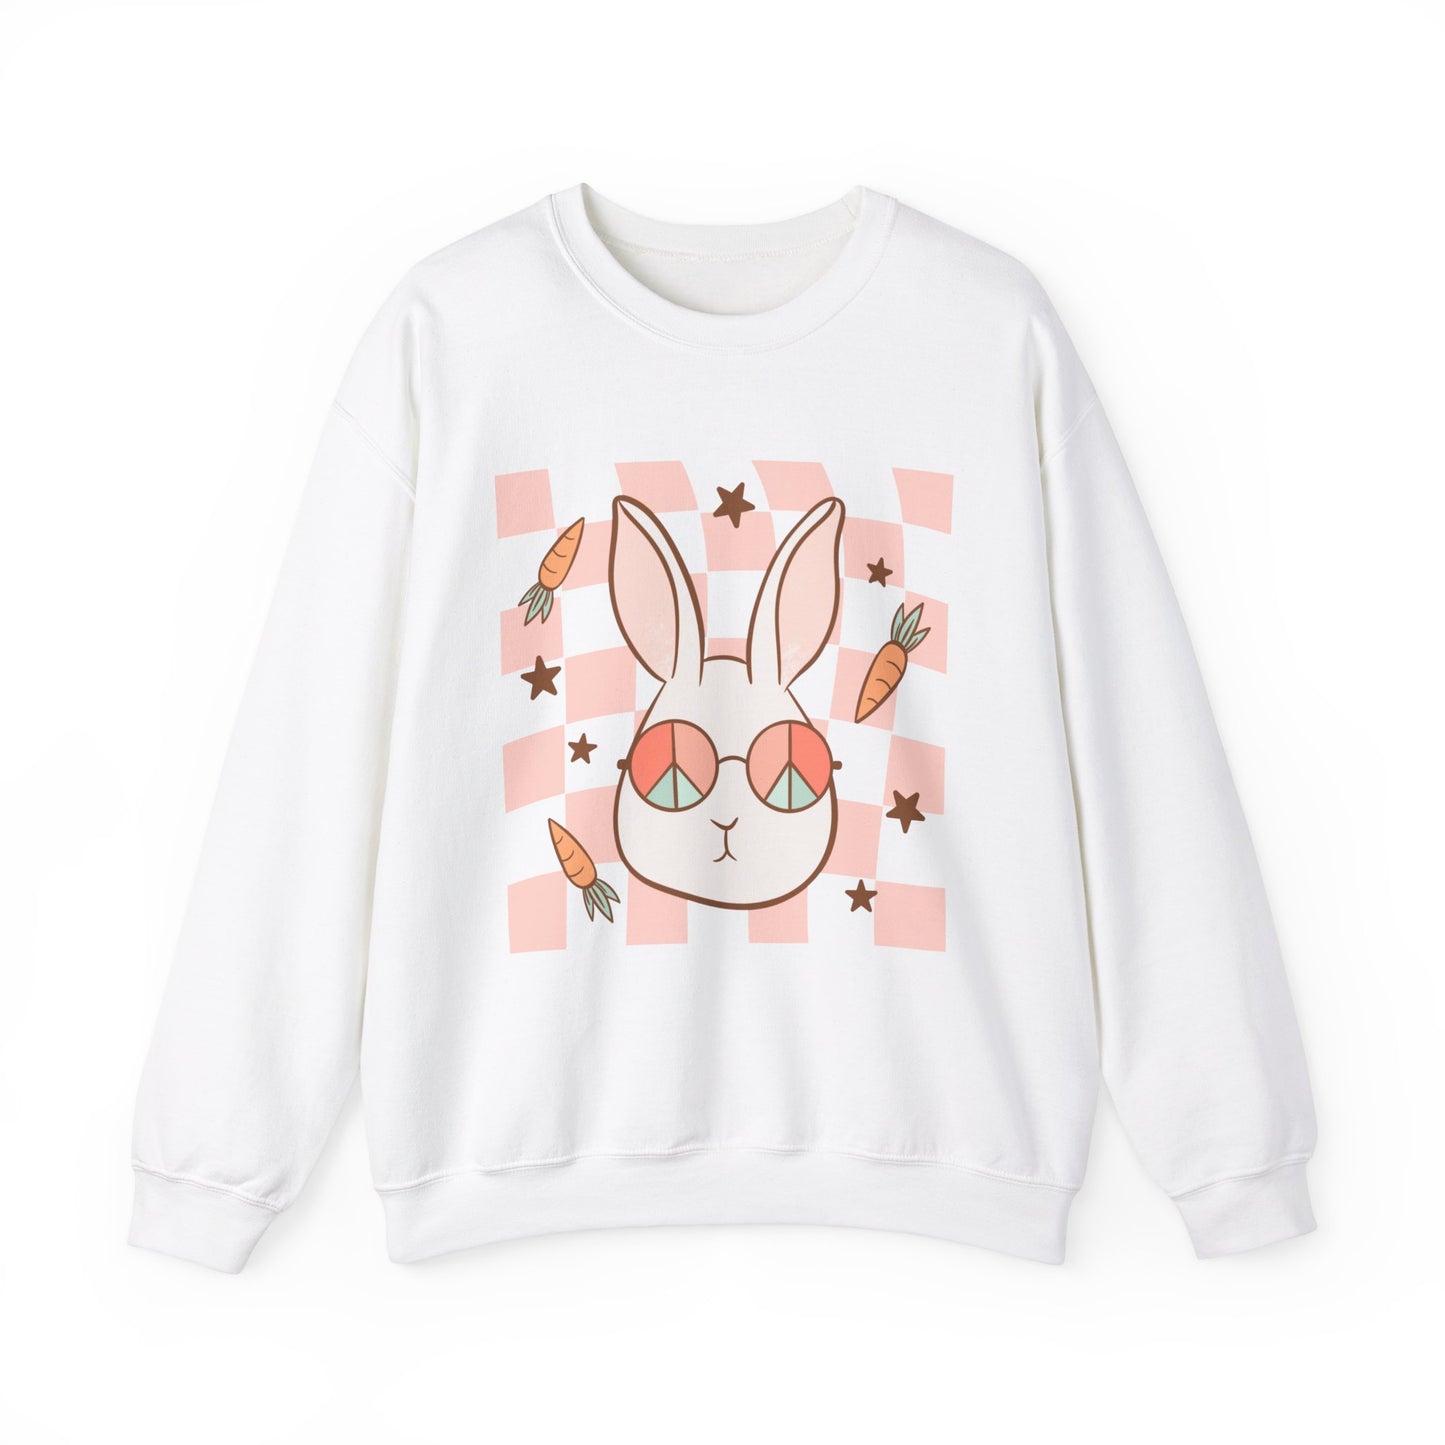 Groovy Bunny Sweatshirt